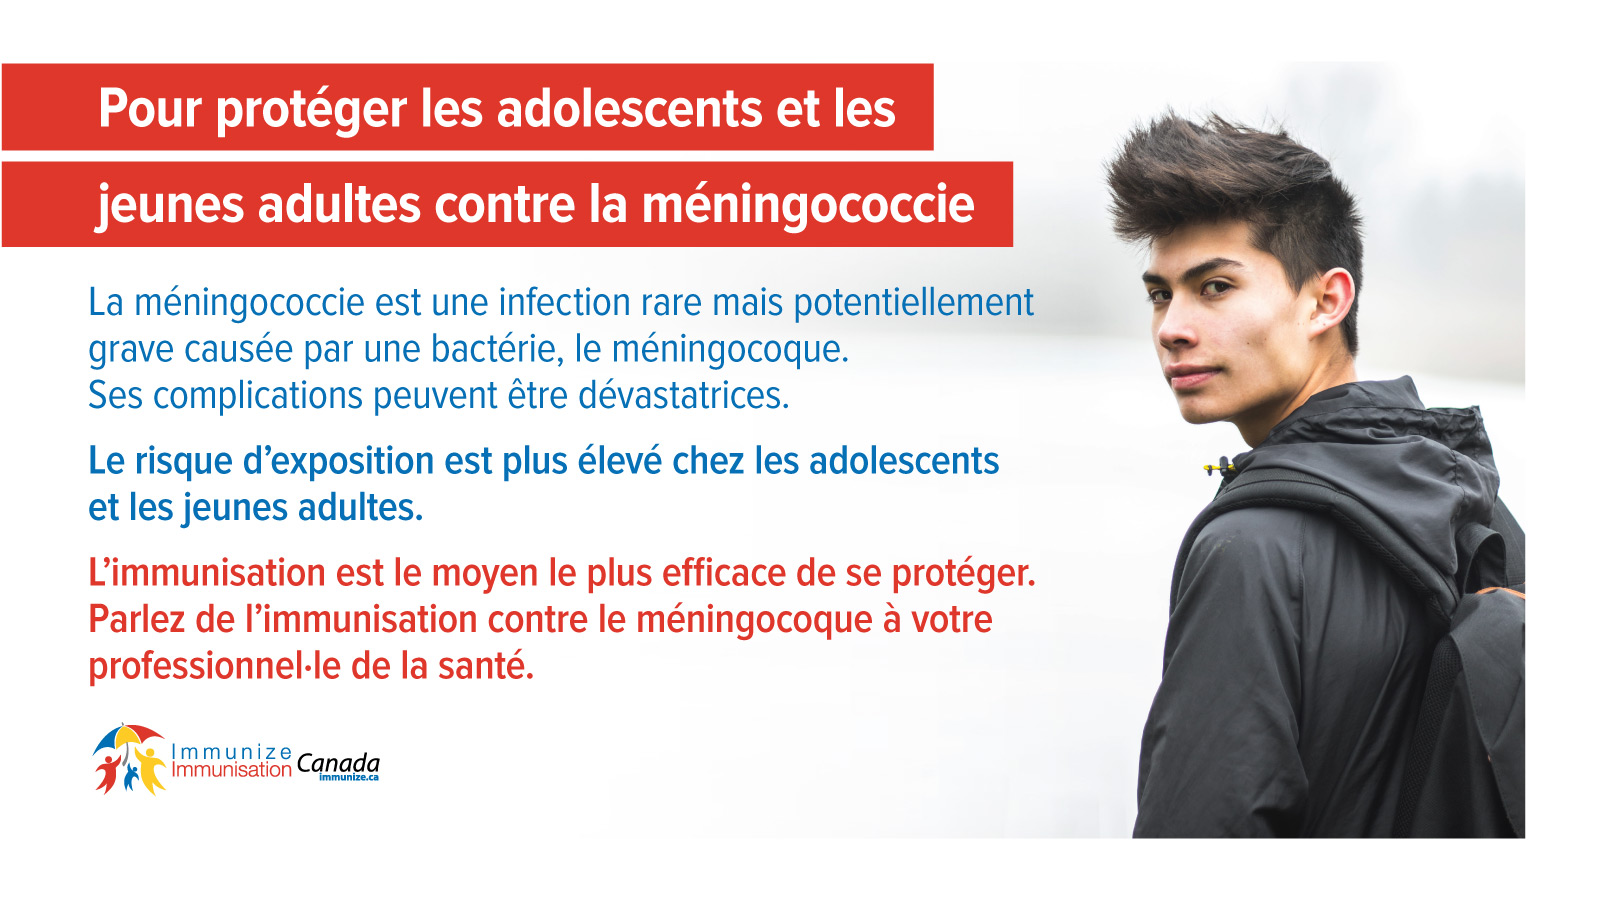 Pour protéger les adolescents et les jeunes adultes contre la méningococcie - image 3 pour Twitter